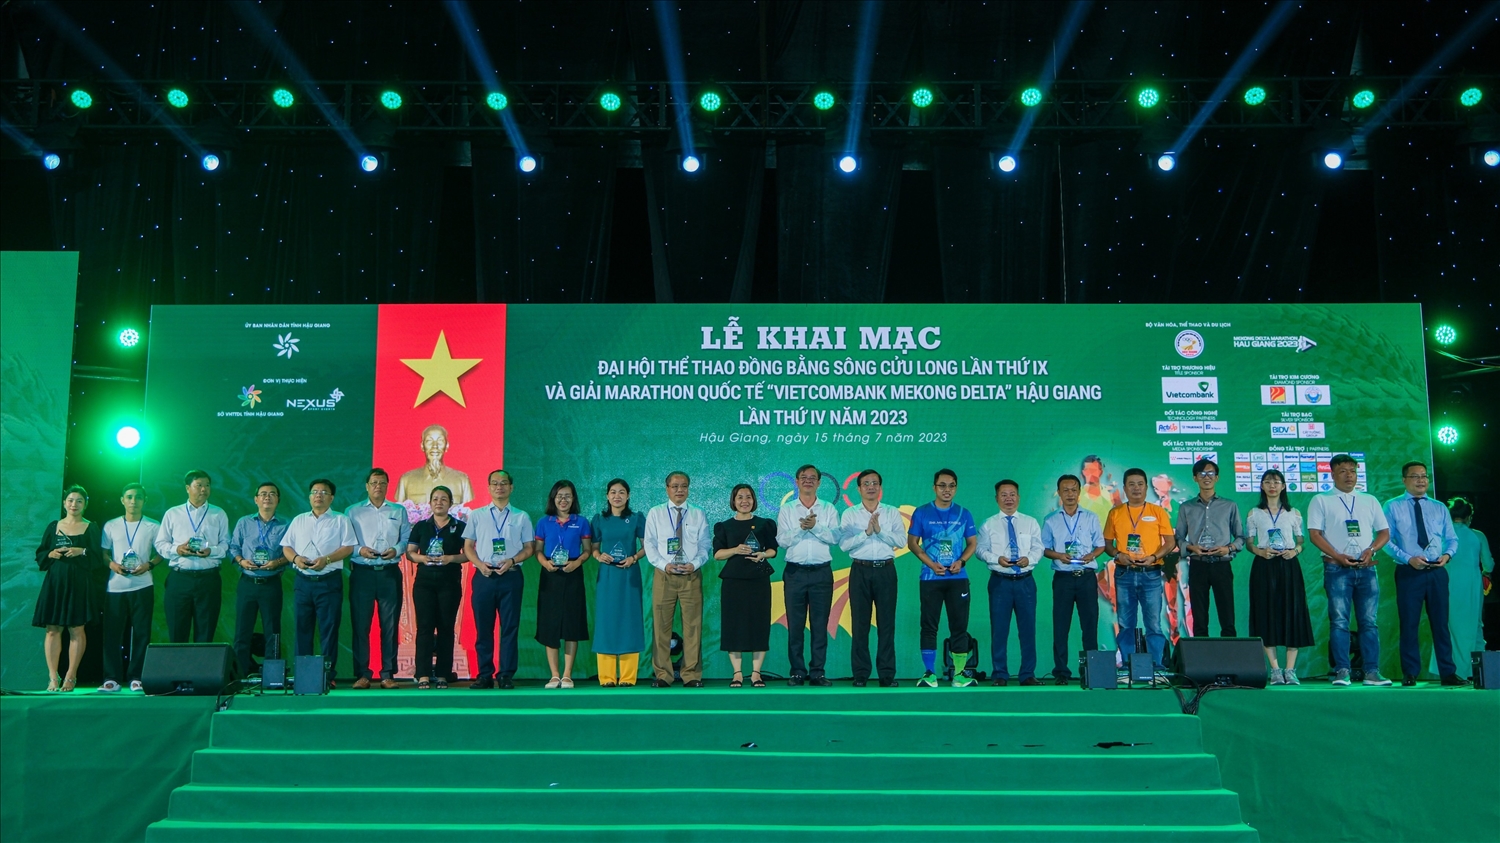 Ban Tổ chức tặng Kỷ niệm chương cho các nhà tài trợ Đại hội Thể thao Đồng bằng sông Cửu Long lần thứ IX và Giải Marathon quốc tế “Vietcombank Mekong Delta” Hậu Giang lần thứ IV năm 2023